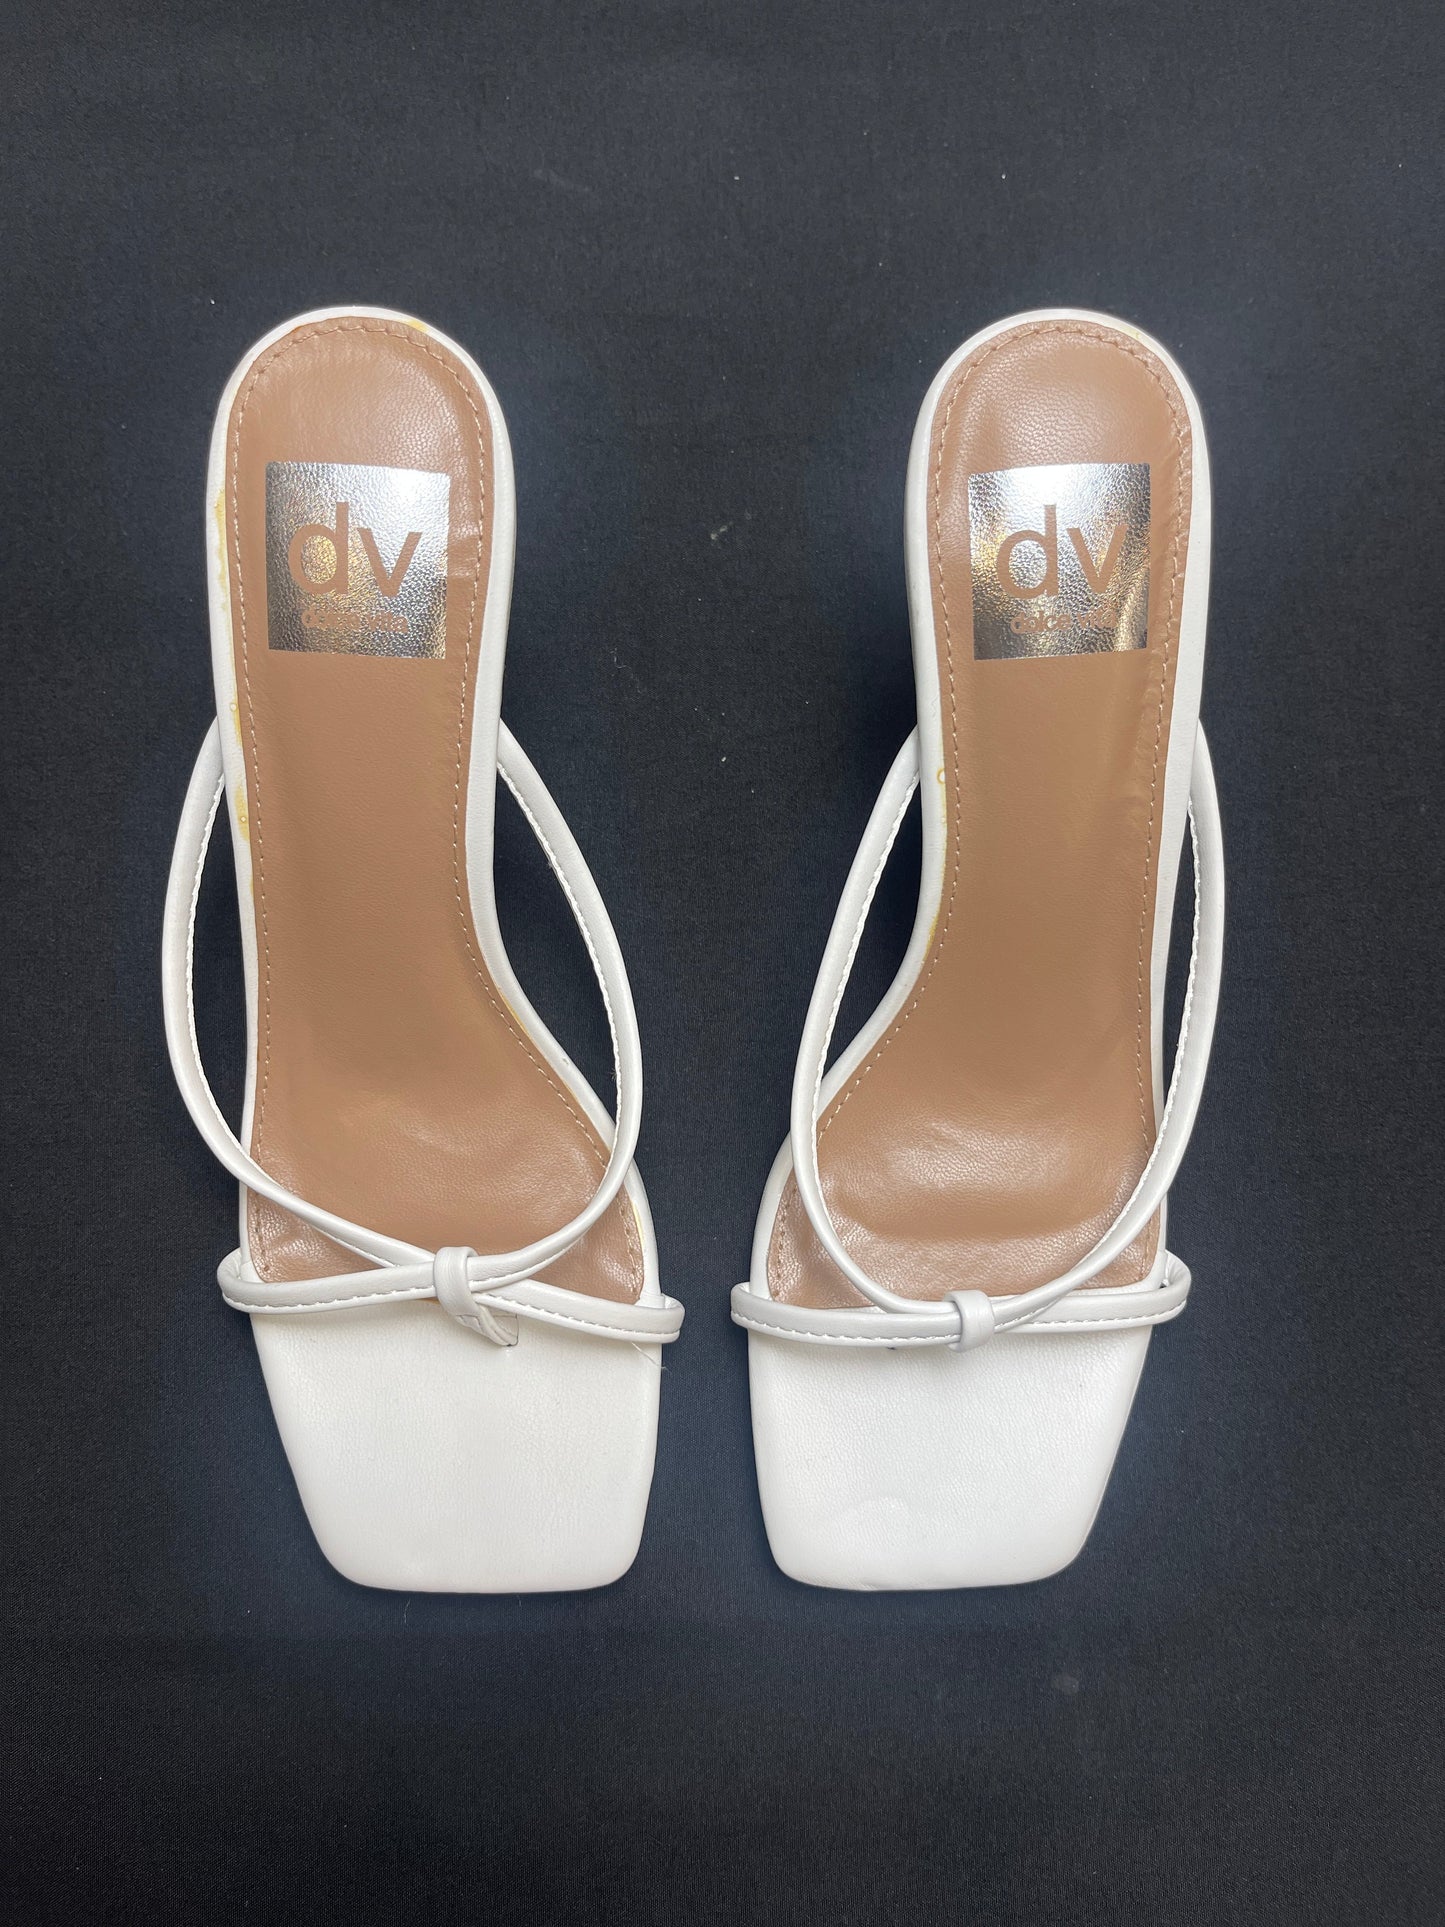 Sandals Heels Stiletto By Dolce Vita  Size: 6